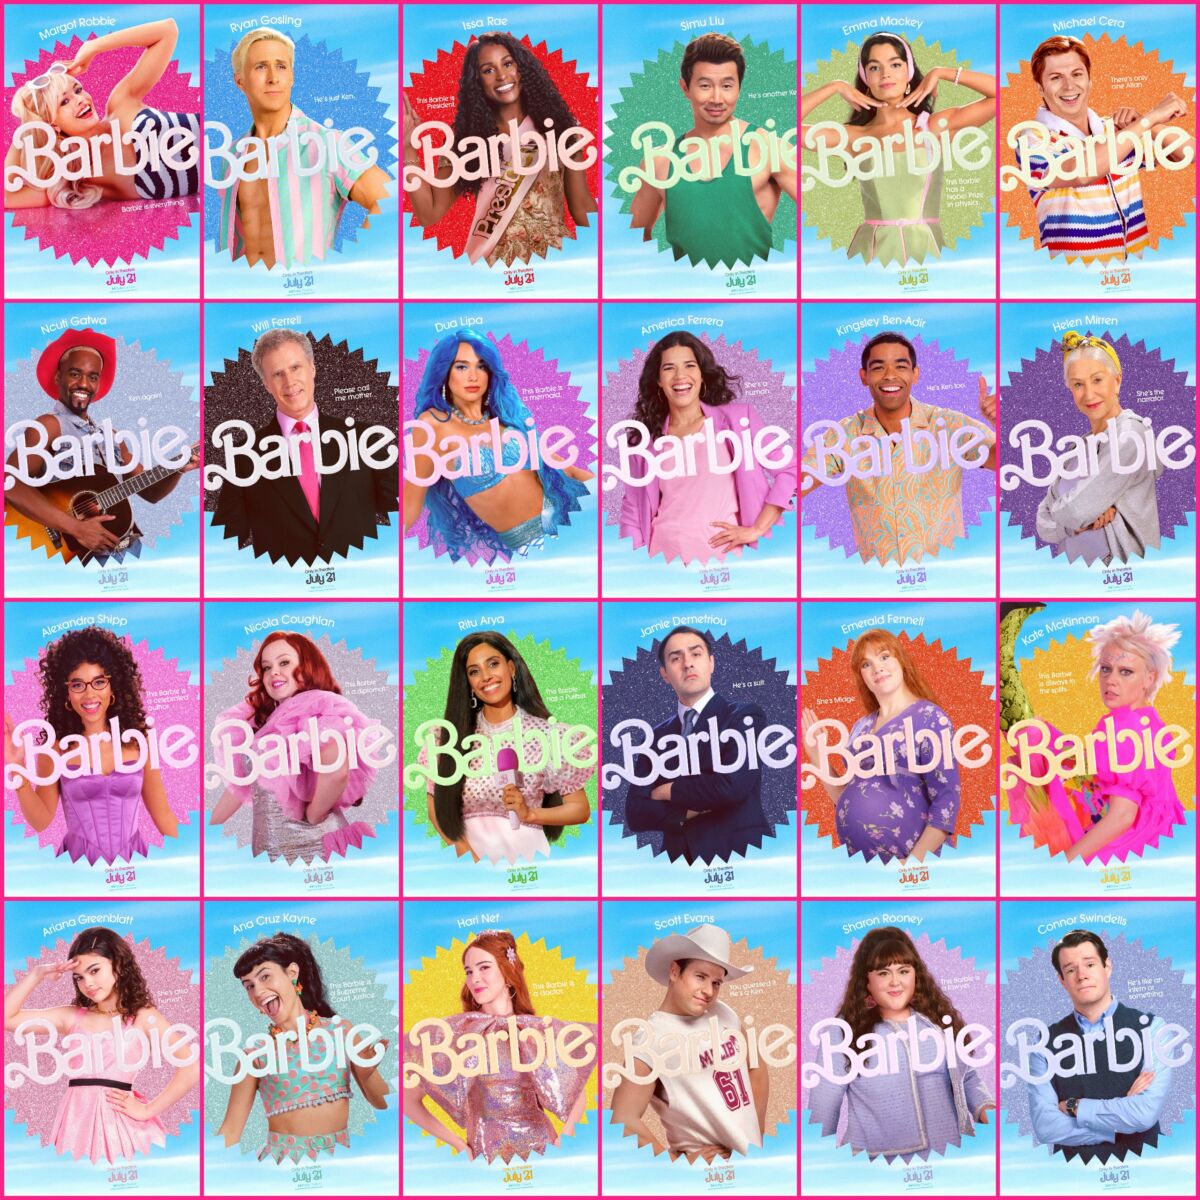 The Barbie Cast Might Surprise You – B98.5